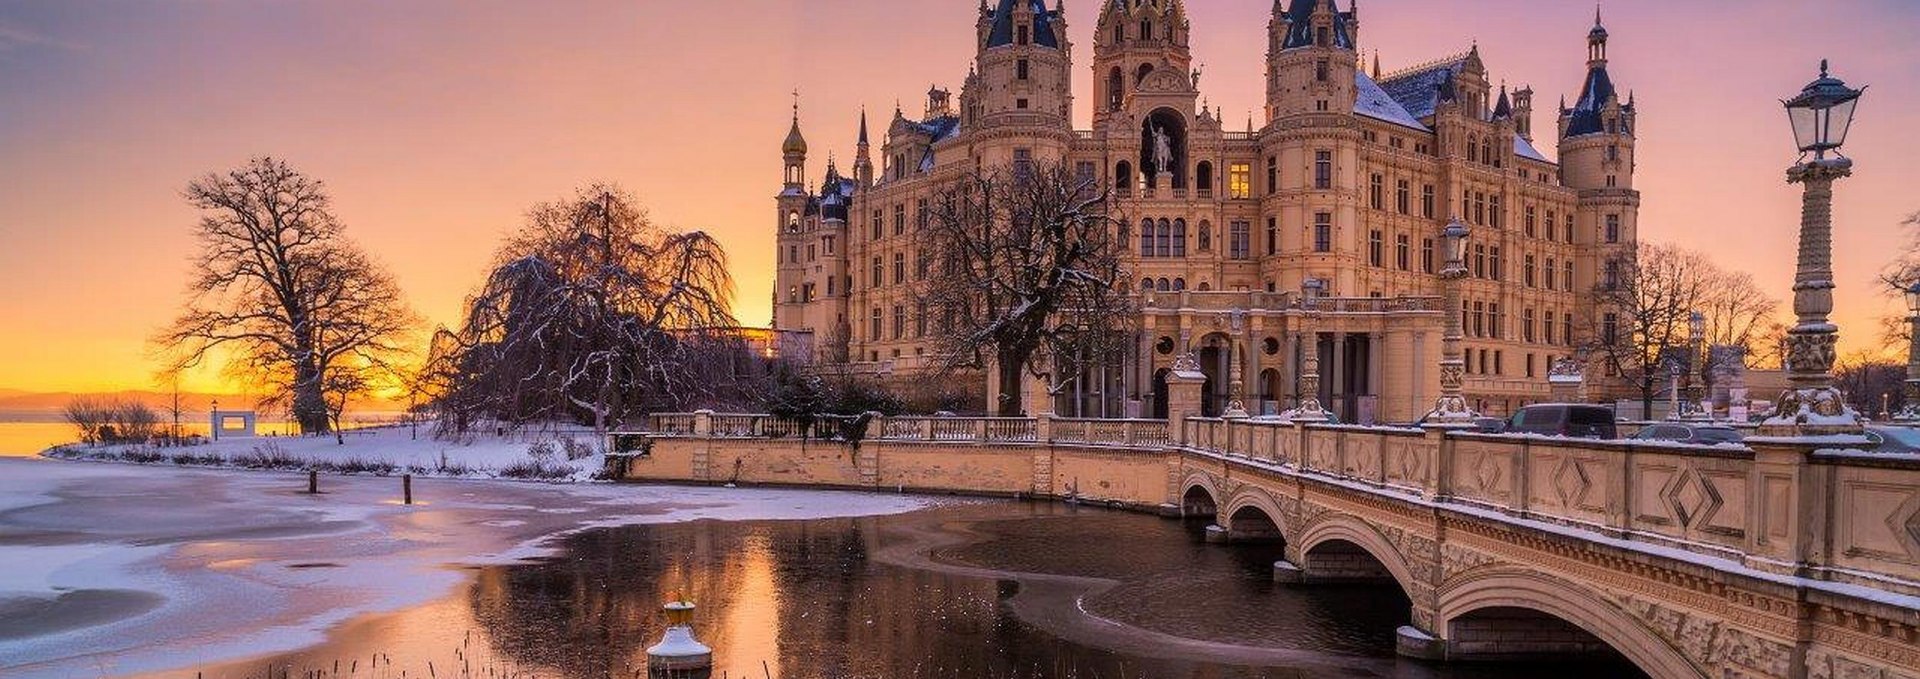 Schloss Schwerin im Winter, © SSGK MV / Timm Allrich